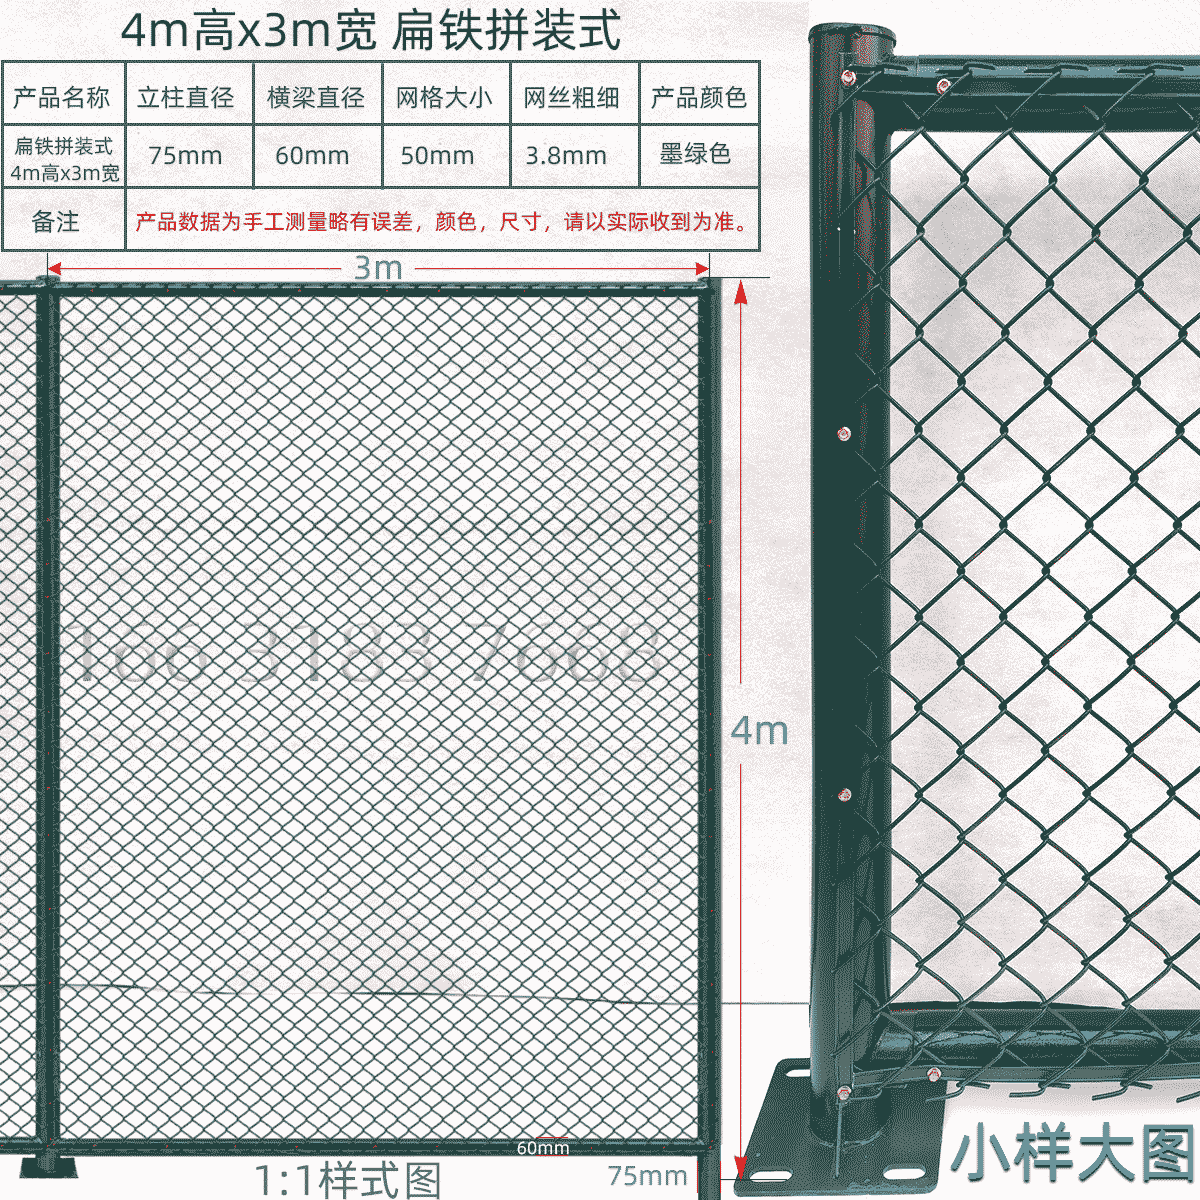 口字形4m高x3m宽扁铁组装式球场围栏网